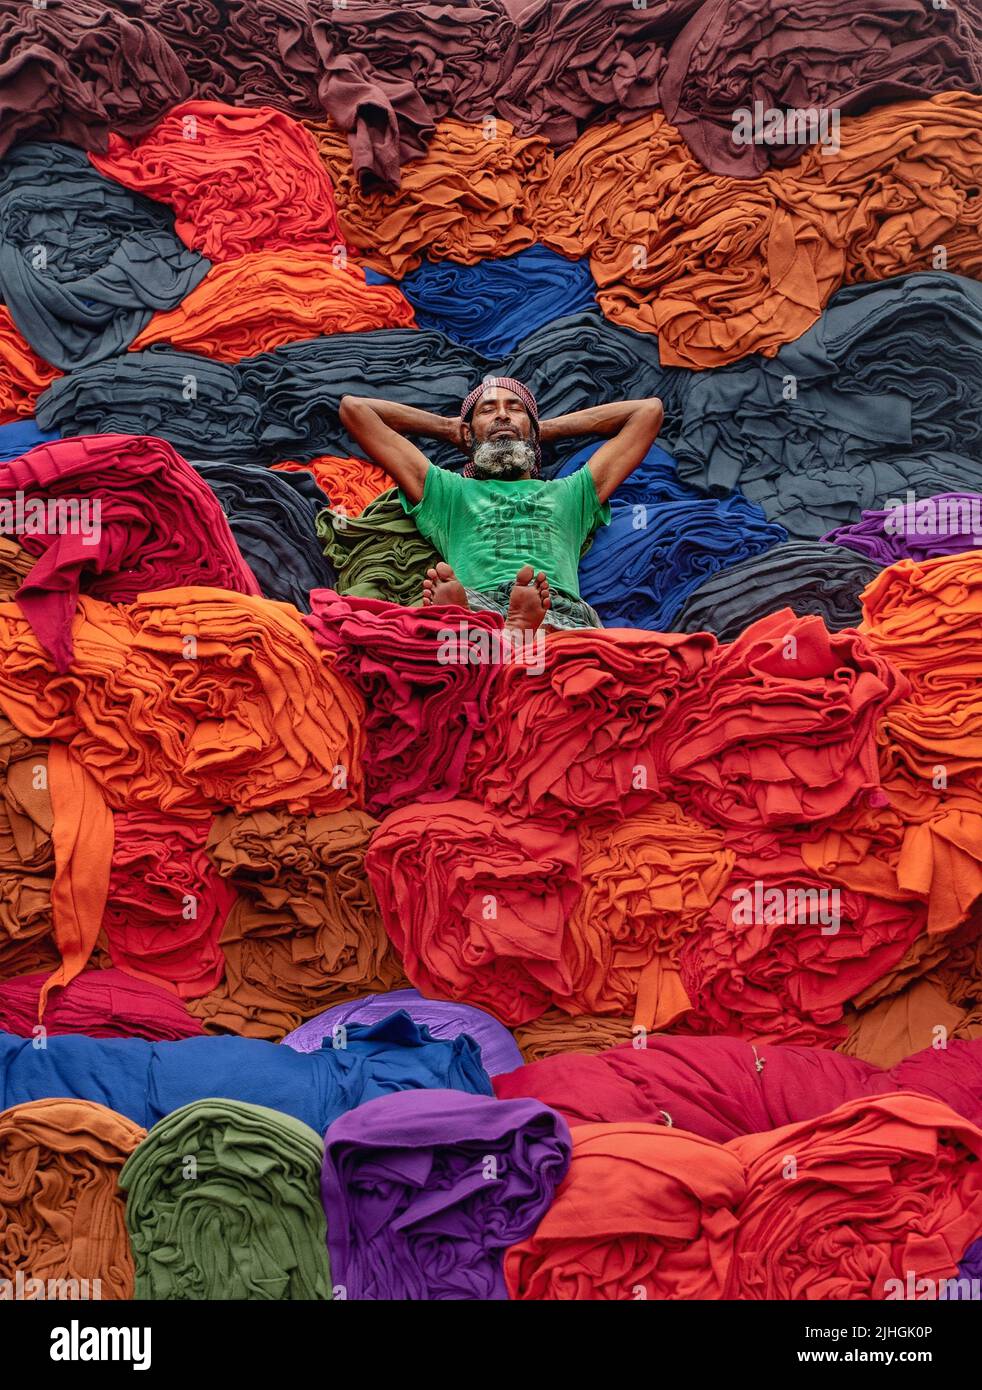 Le coperte colorate vengono caricate sui camion dai lavoratori. Industria tessile in Bangladesh Foto Stock